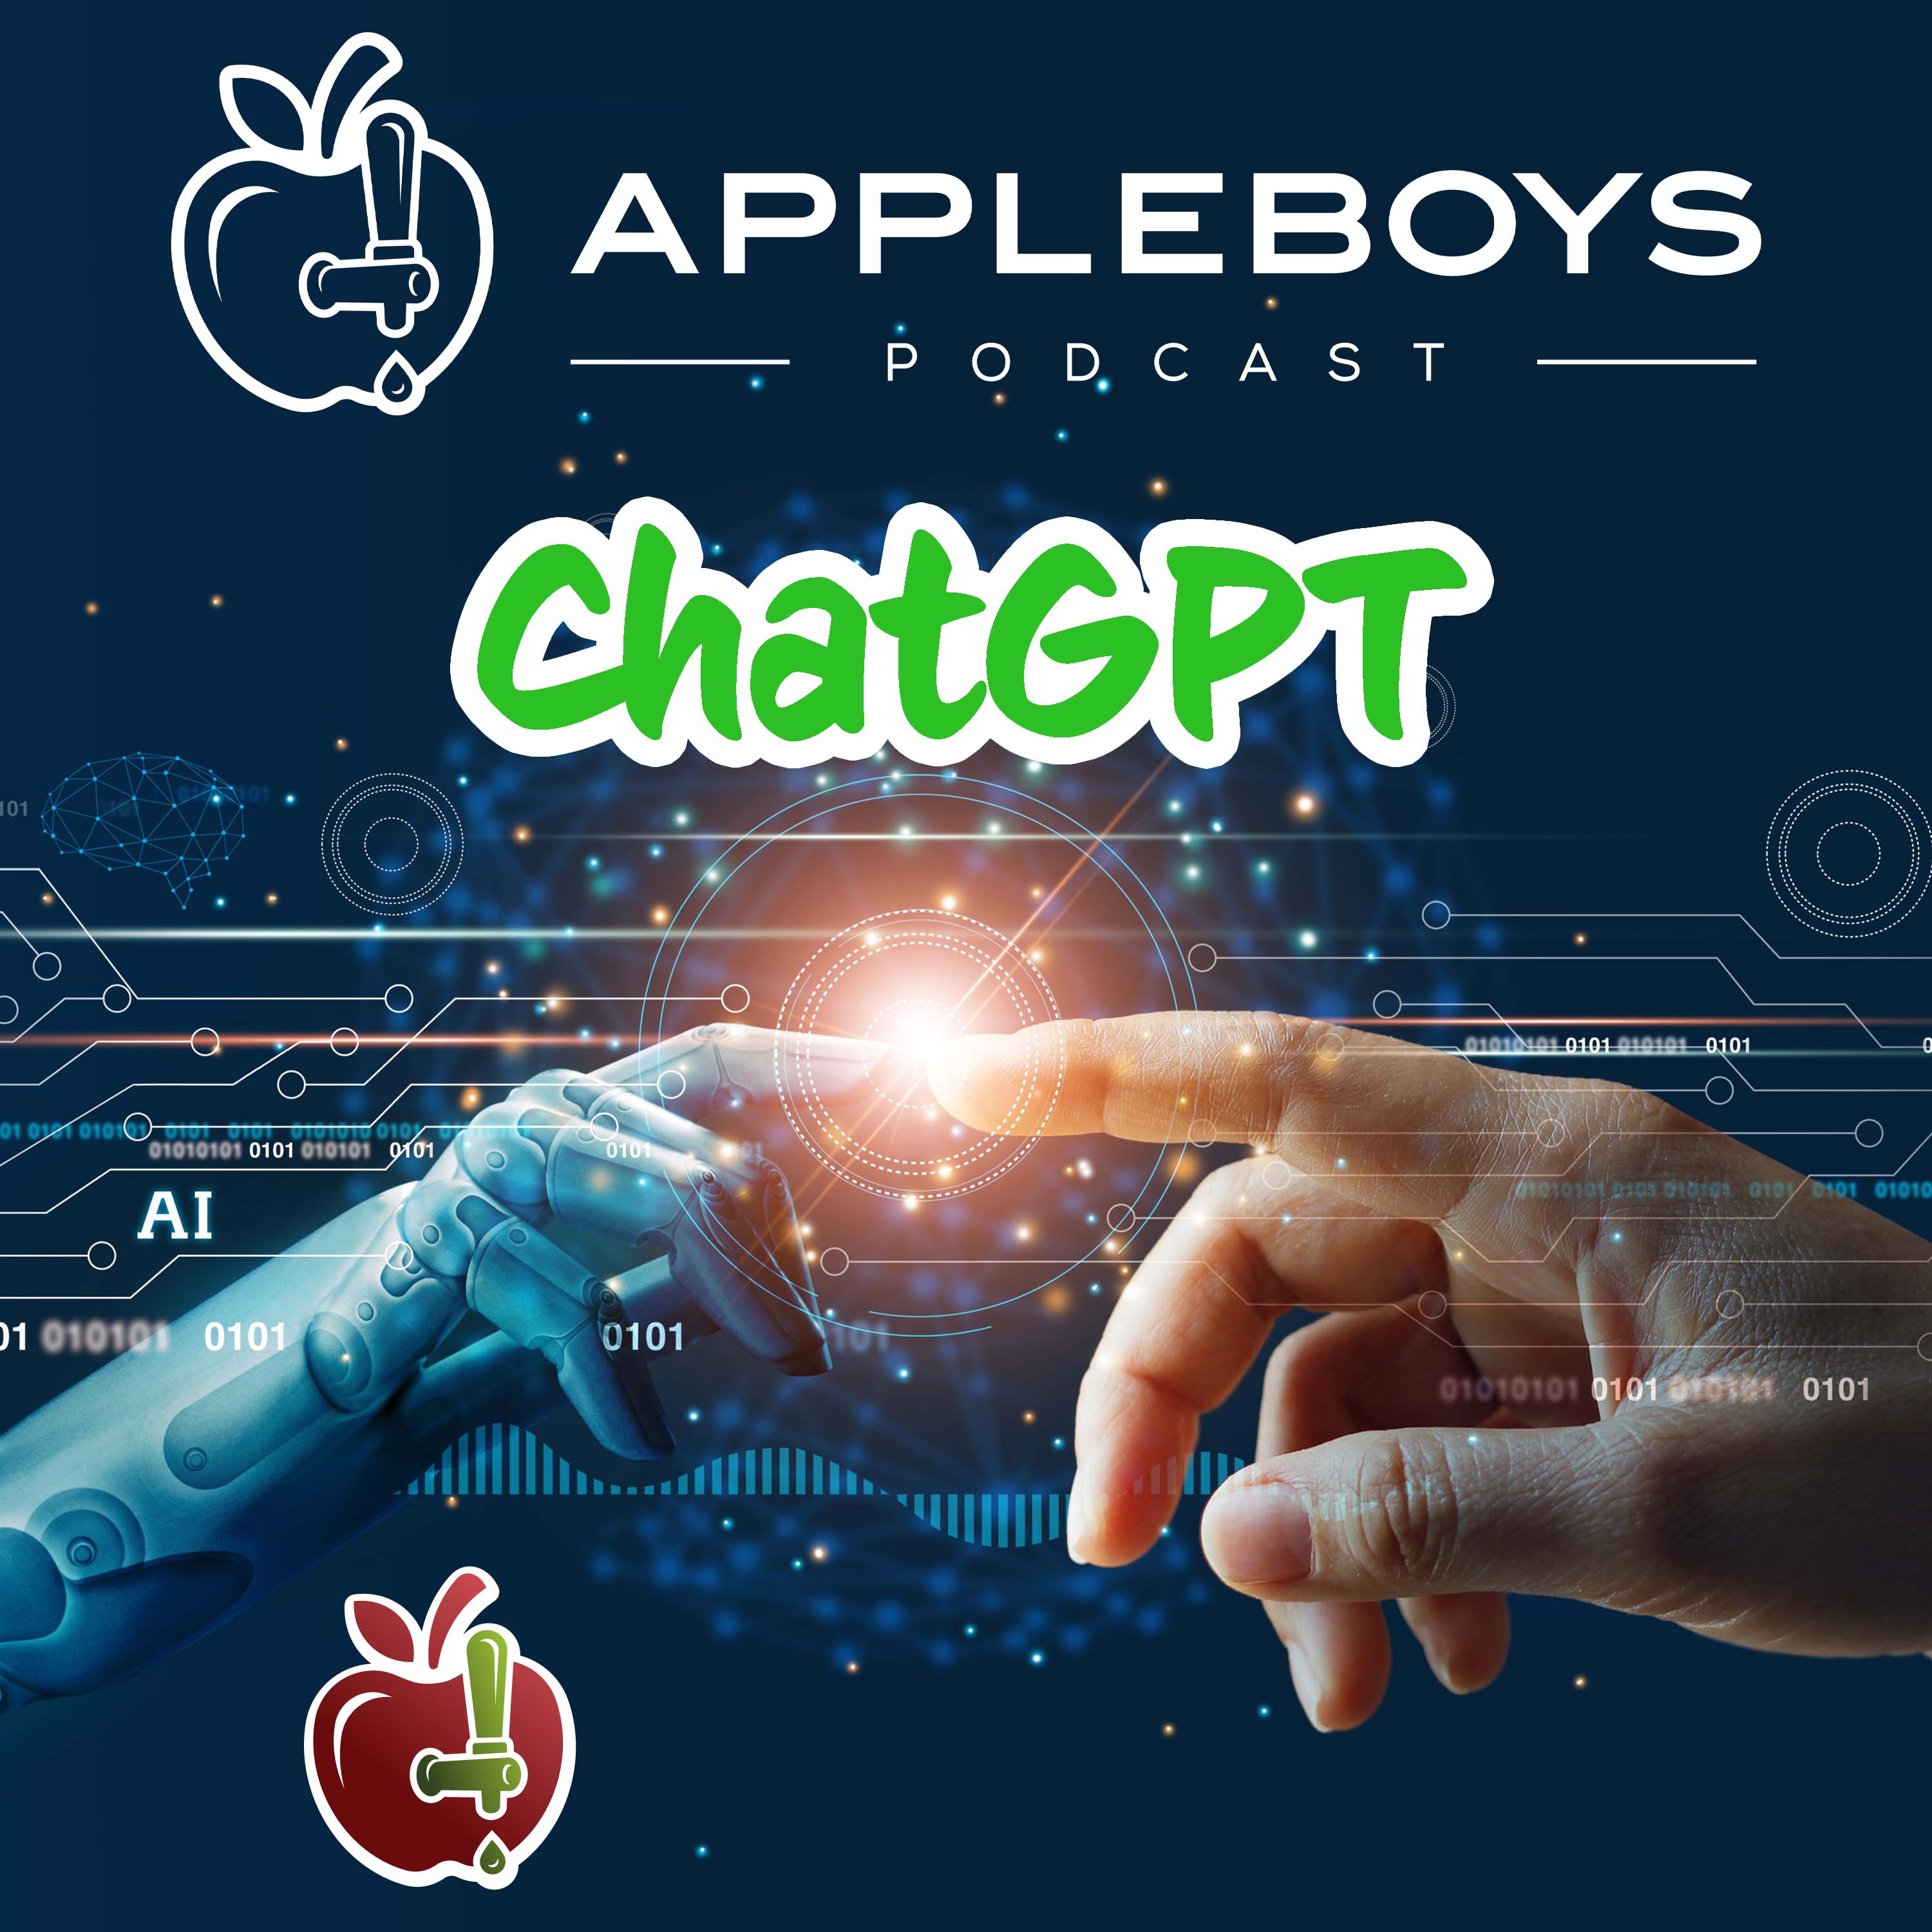 Artwork for podcast Appleboys Podcast